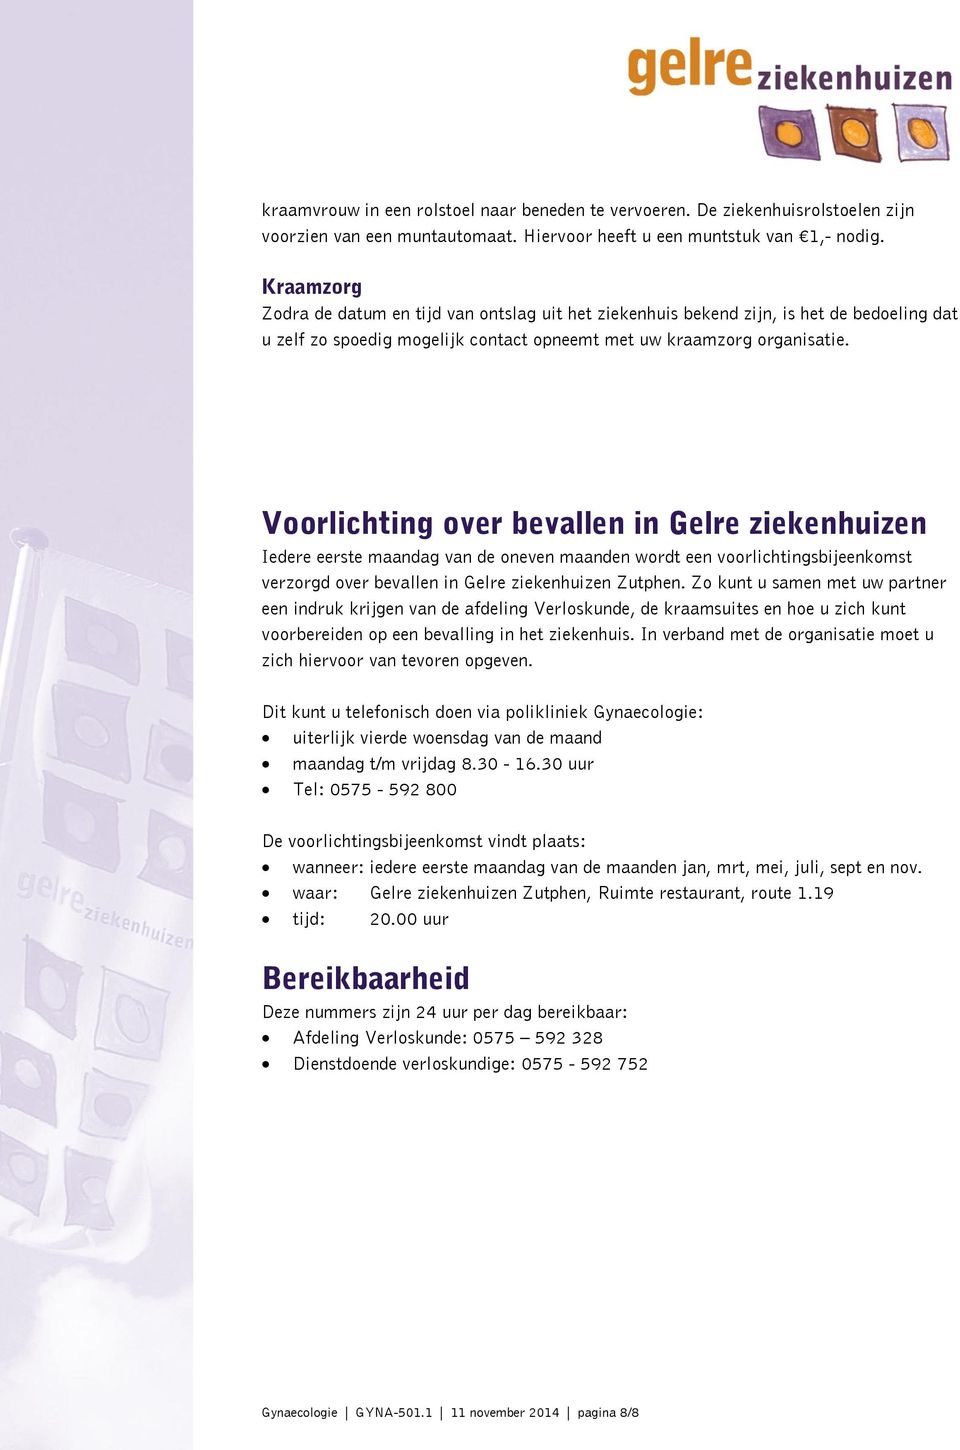 Voorlichting over bevallen in Gelre ziekenhuizen Iedere eerste maandag van de oneven maanden wordt een voorlichtingsbijeenkomst verzorgd over bevallen in Gelre ziekenhuizen Zutphen.